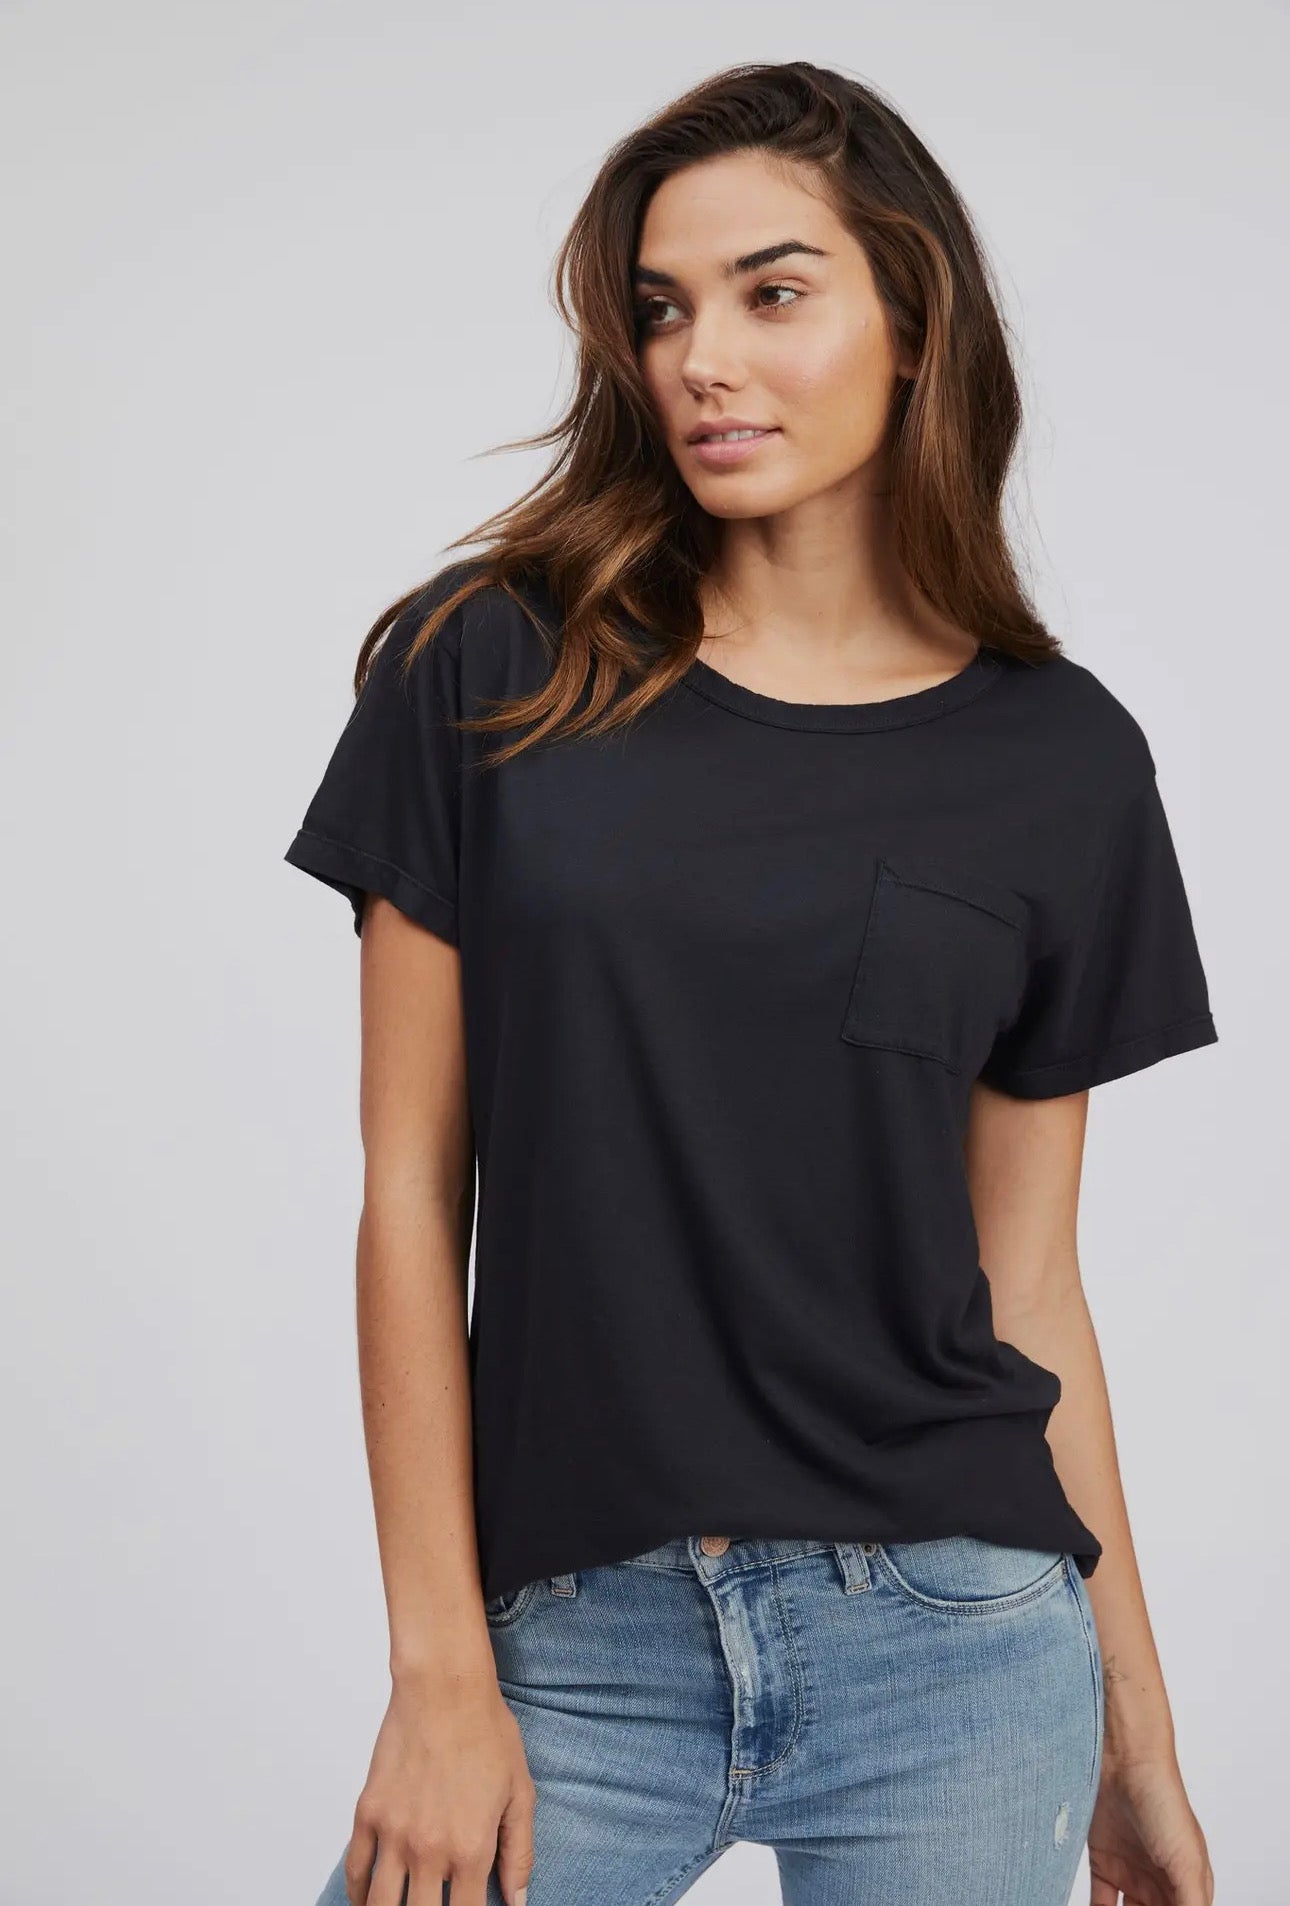 Black T-Shirt - SOCIALITE – Ele Merchant Boutique